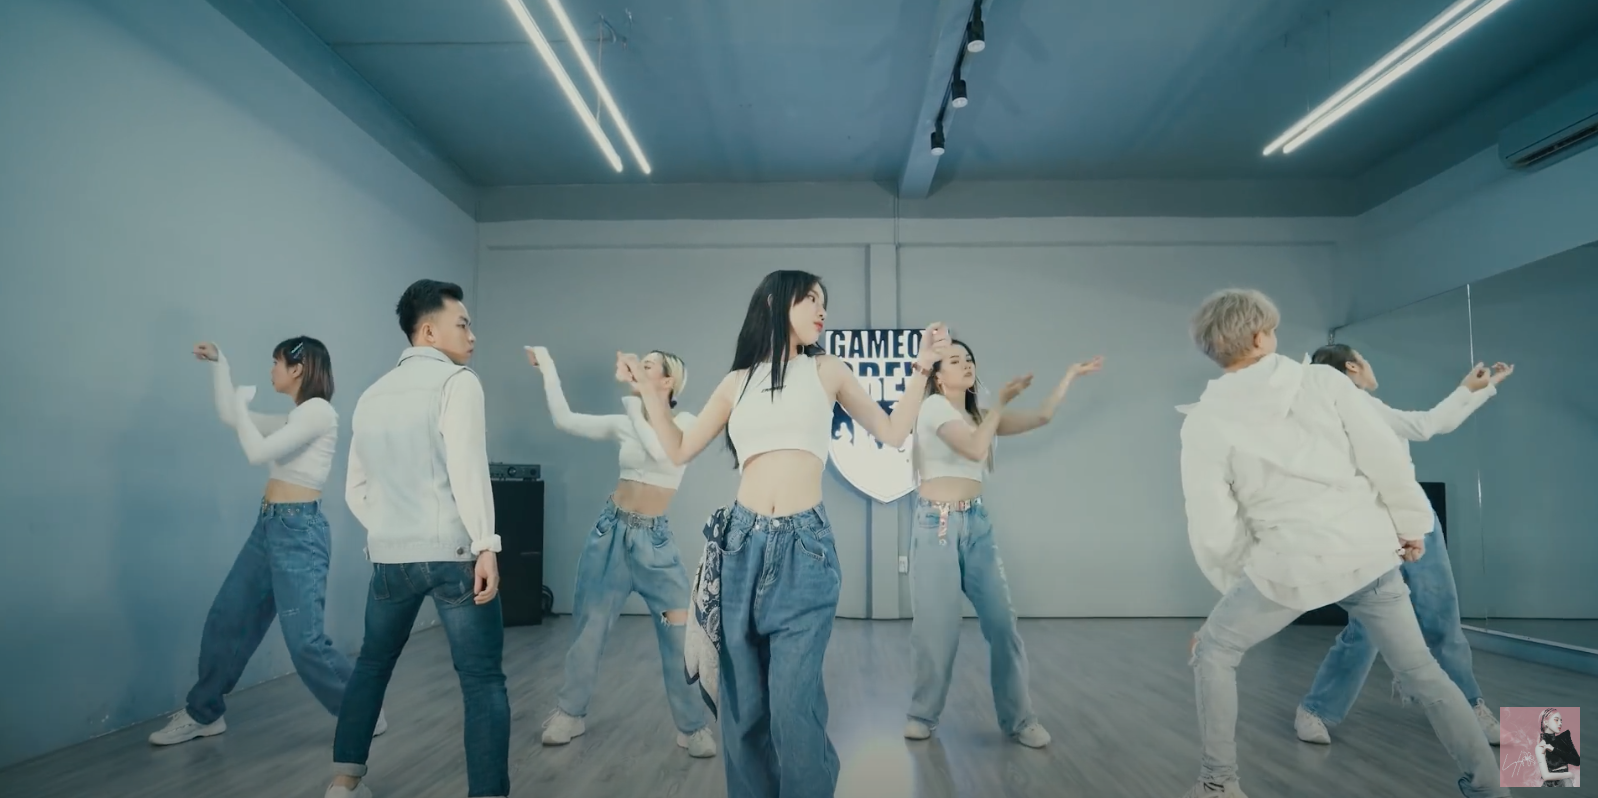 LyLy khoe eo “con kiến” đầy quyến rũ trong MV dance version “Bởi vì là khi yêu”